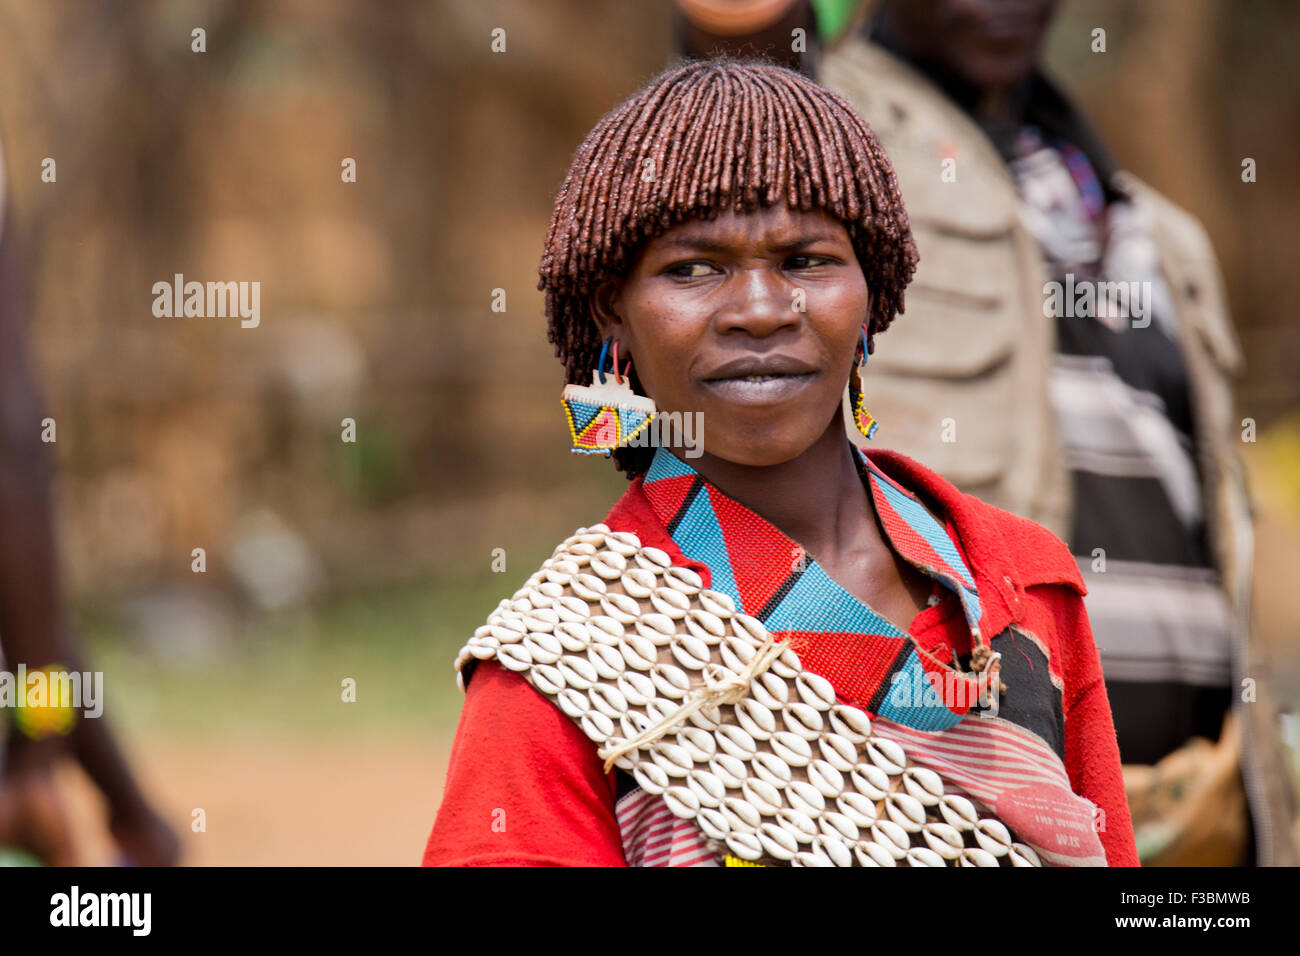 Africa, Etiopia, regione dell'Omo, Ari tribù donna fotografata al mercato del bestiame Foto Stock